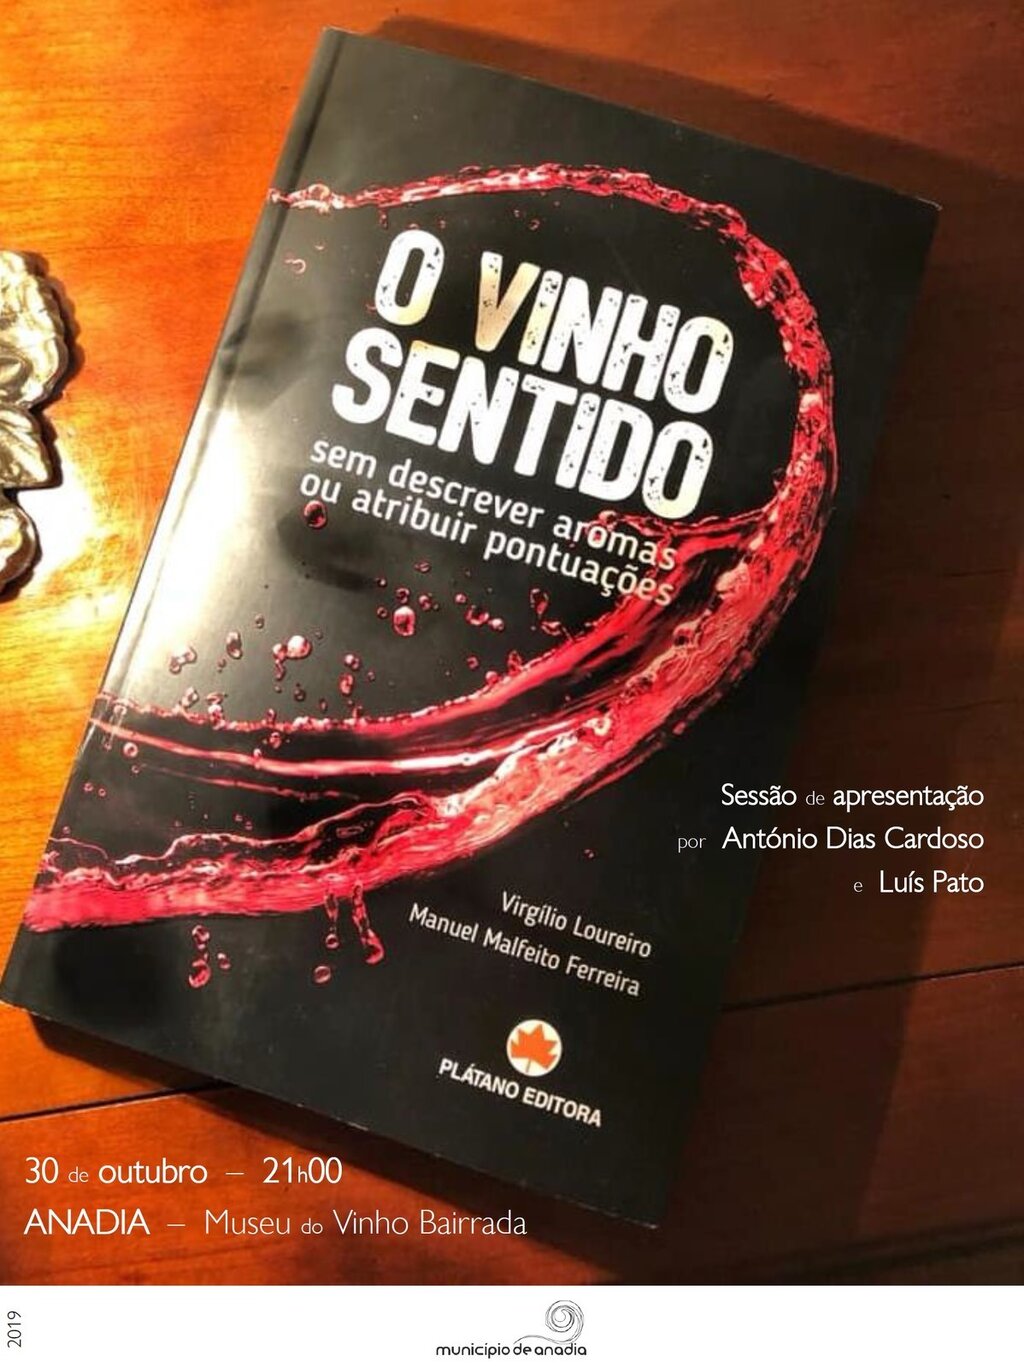 Apresentação do livro : "O Vinho Sentido sem descrever aromas ou atribuir pontuações"